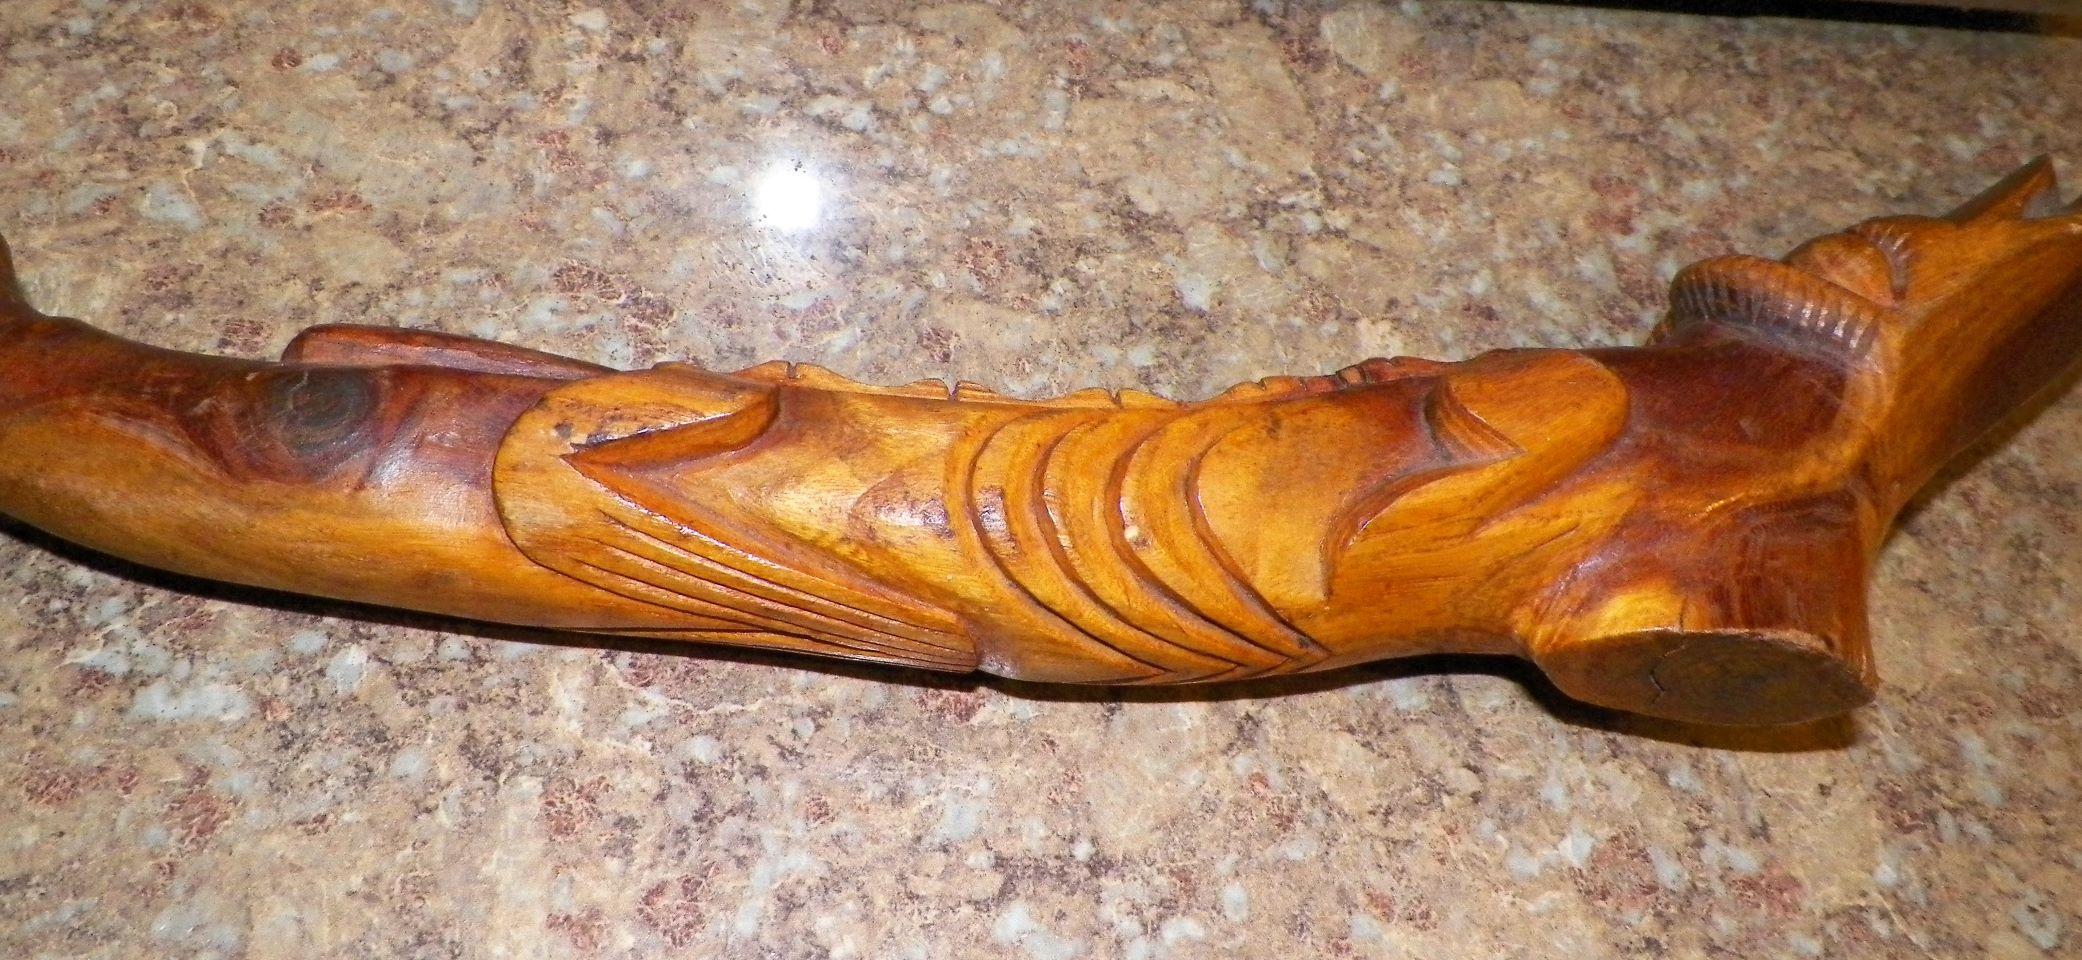 aa art statue carved wood hawaii eskimo snake animal 3AAa.JPG